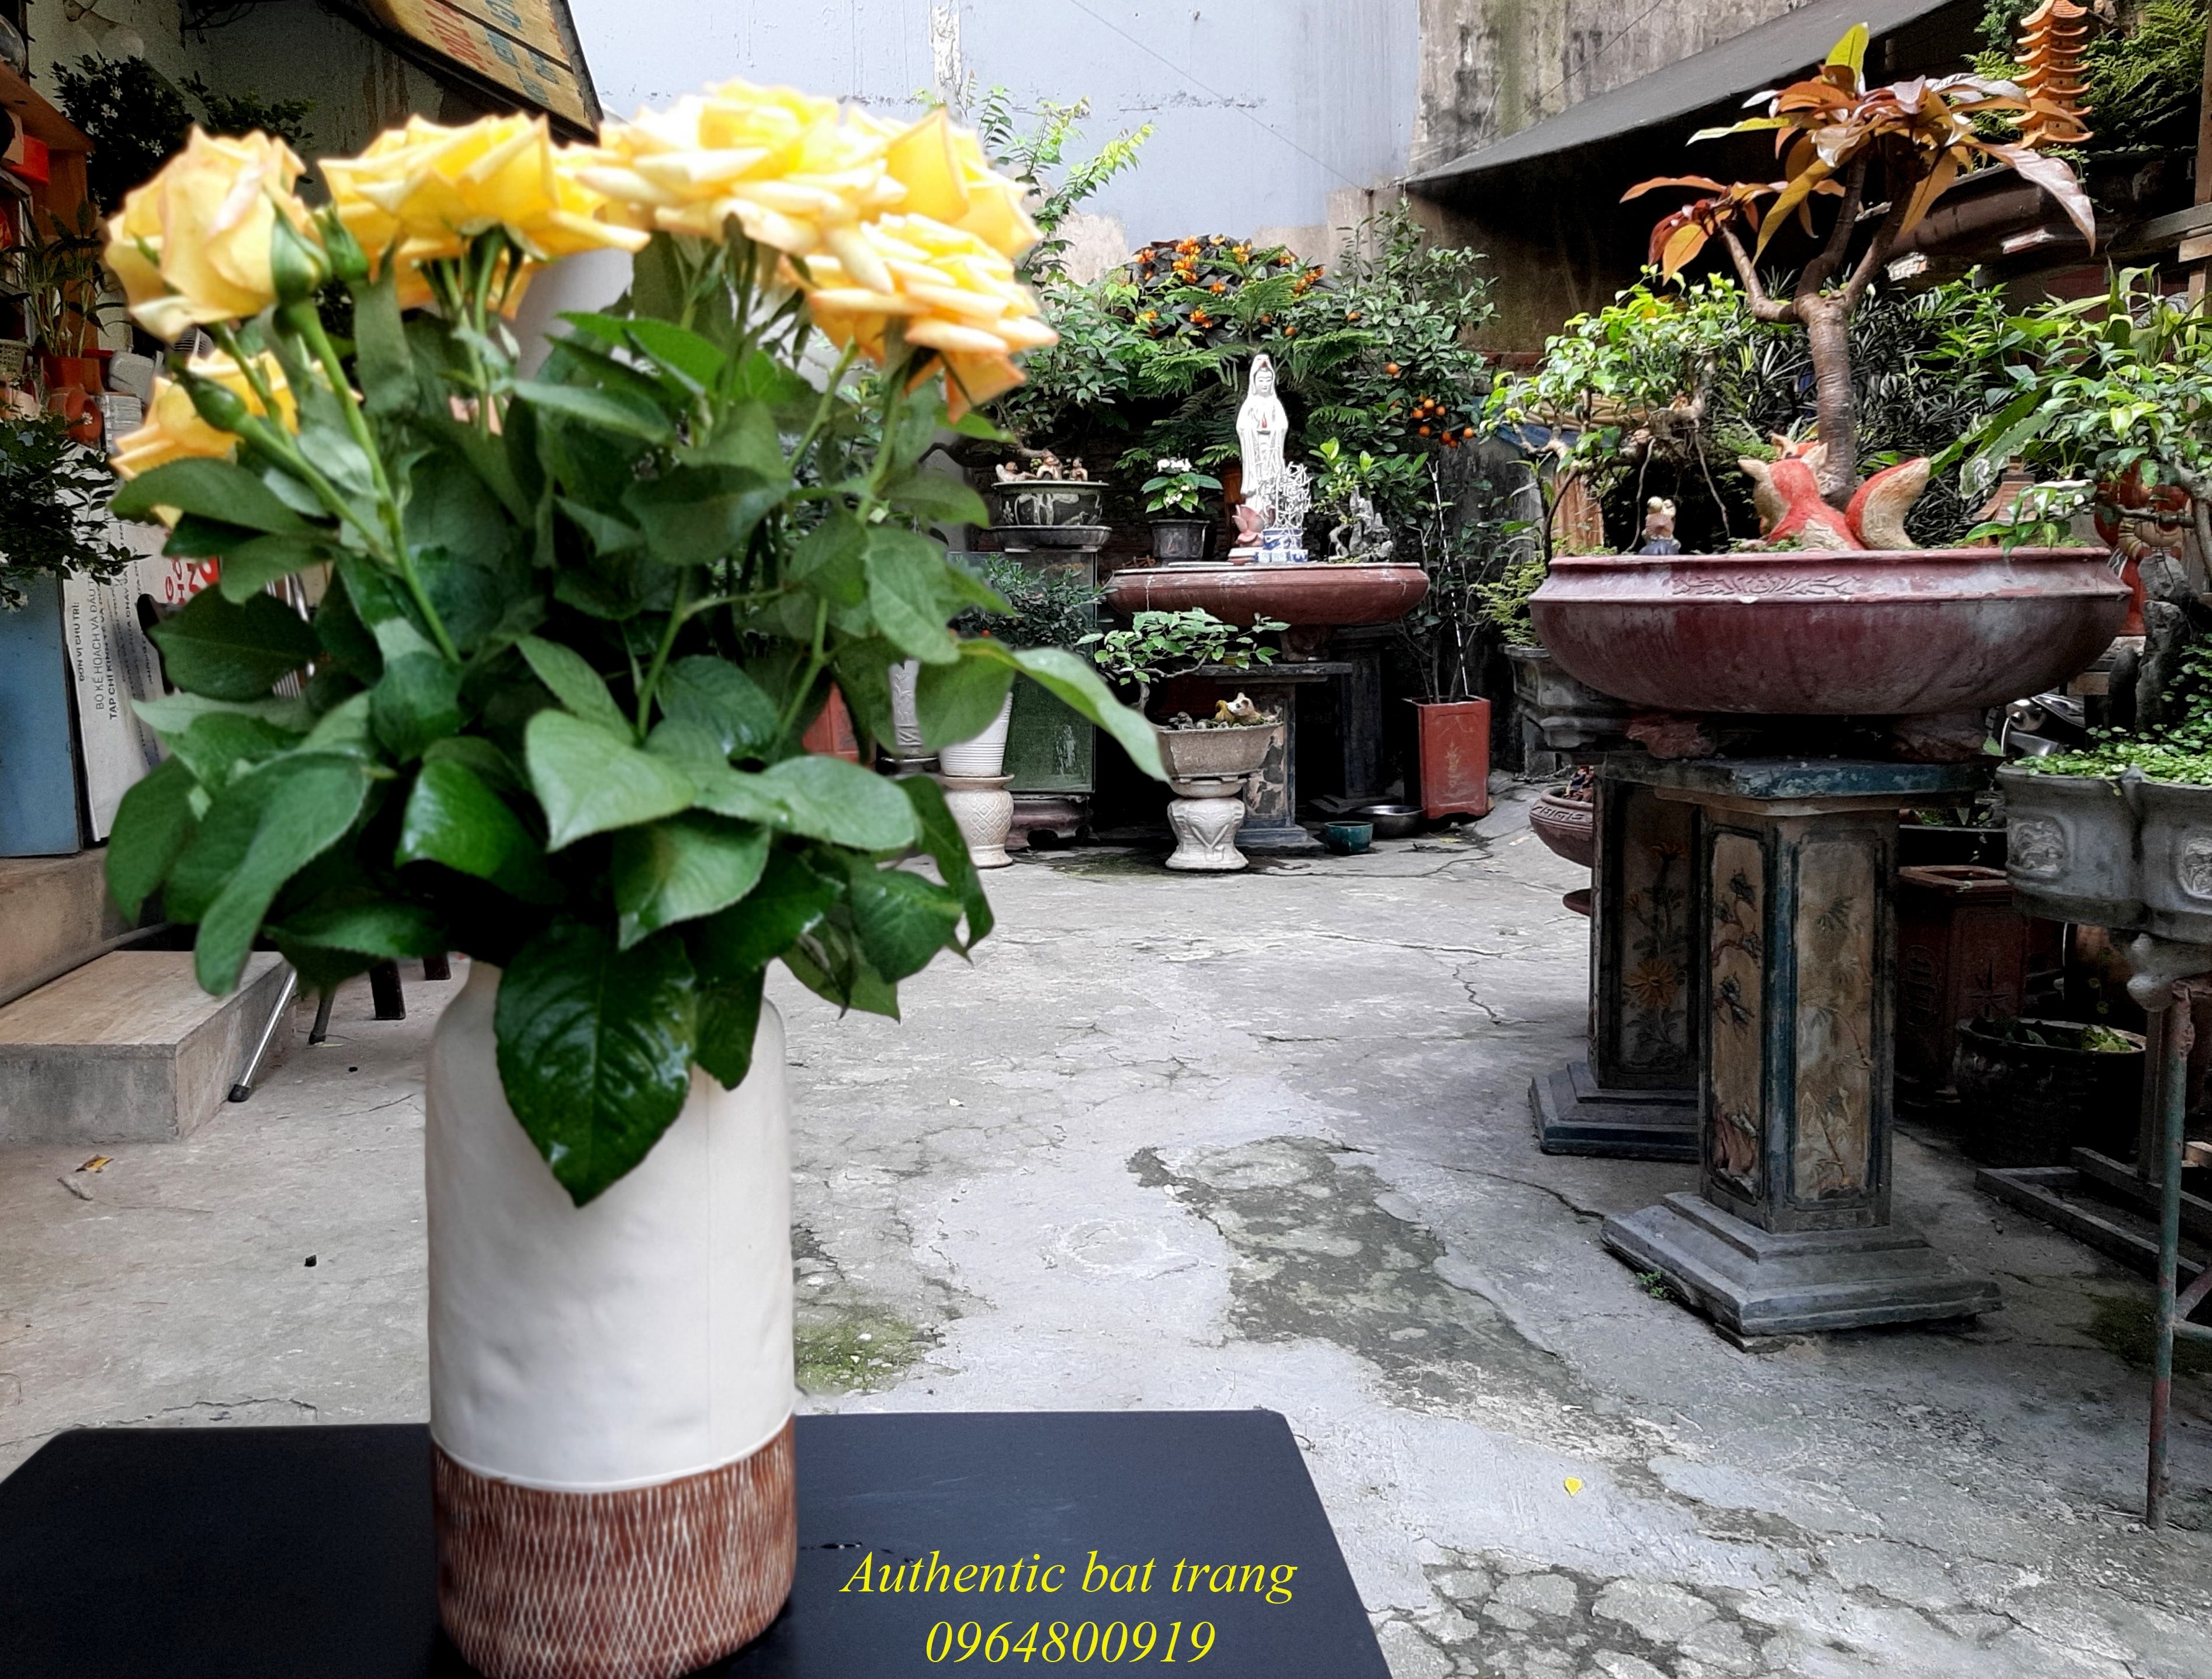 Ceramics vase/ bình cắm hoa xuất âu sản phẩm trang trí nhà cửa đẹp, sang trọng sản xuất tại bát tràng, việt nam